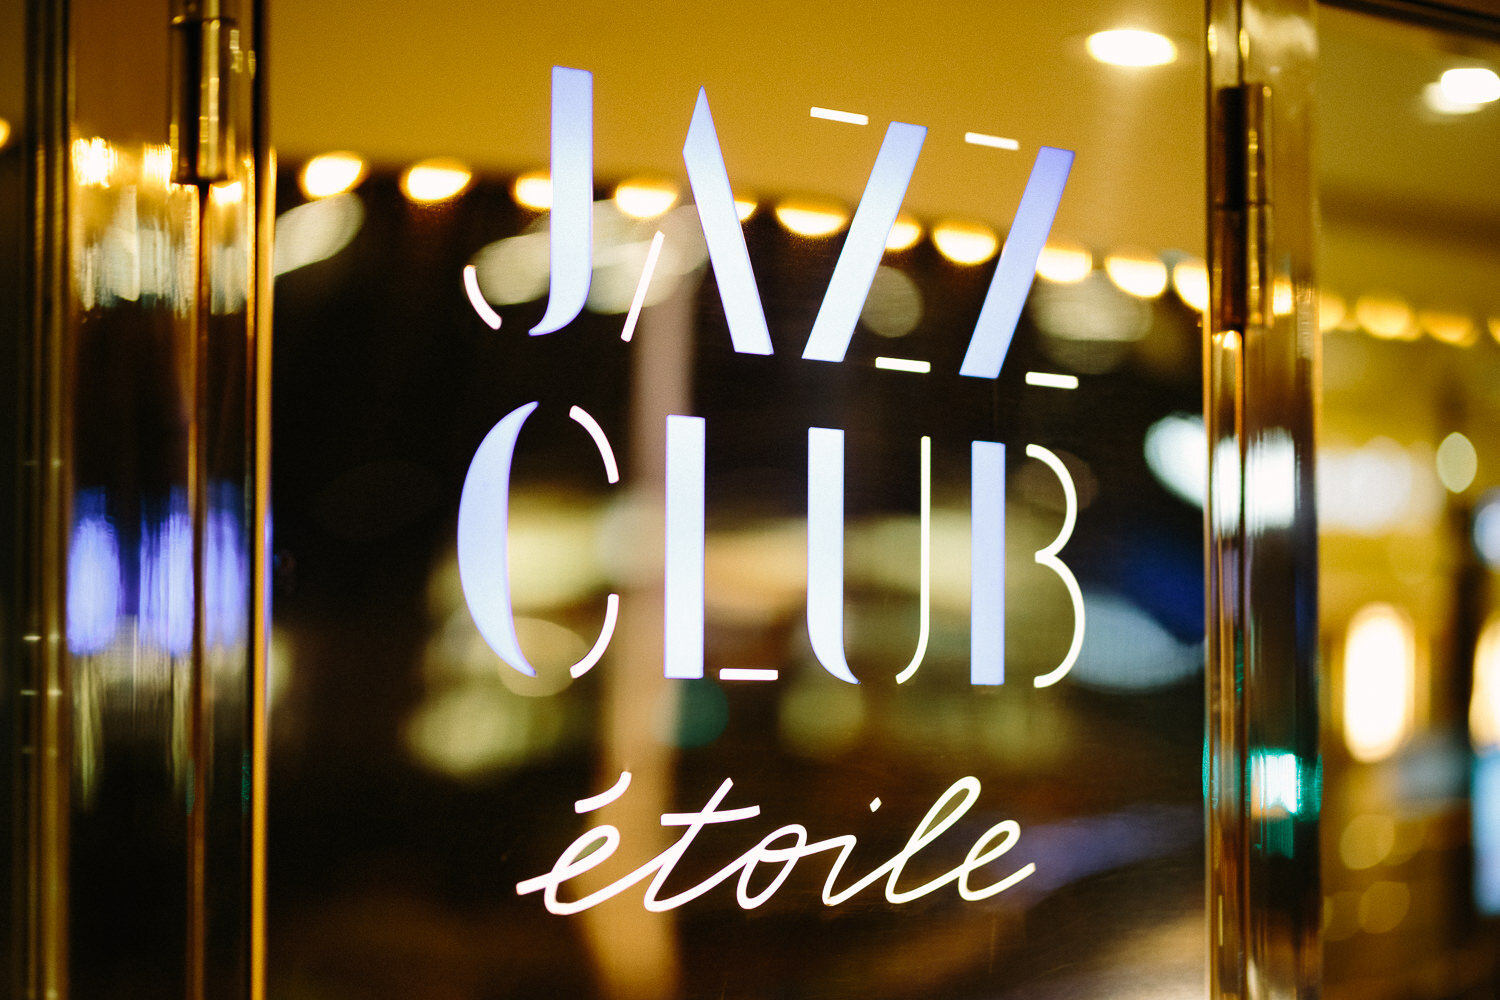  Jazz Club Night au Jazz Club Etoile - Photo: www.fb.me/photosForDancersOnly - http://www.ebobrie.com/jazz-club-night-1 